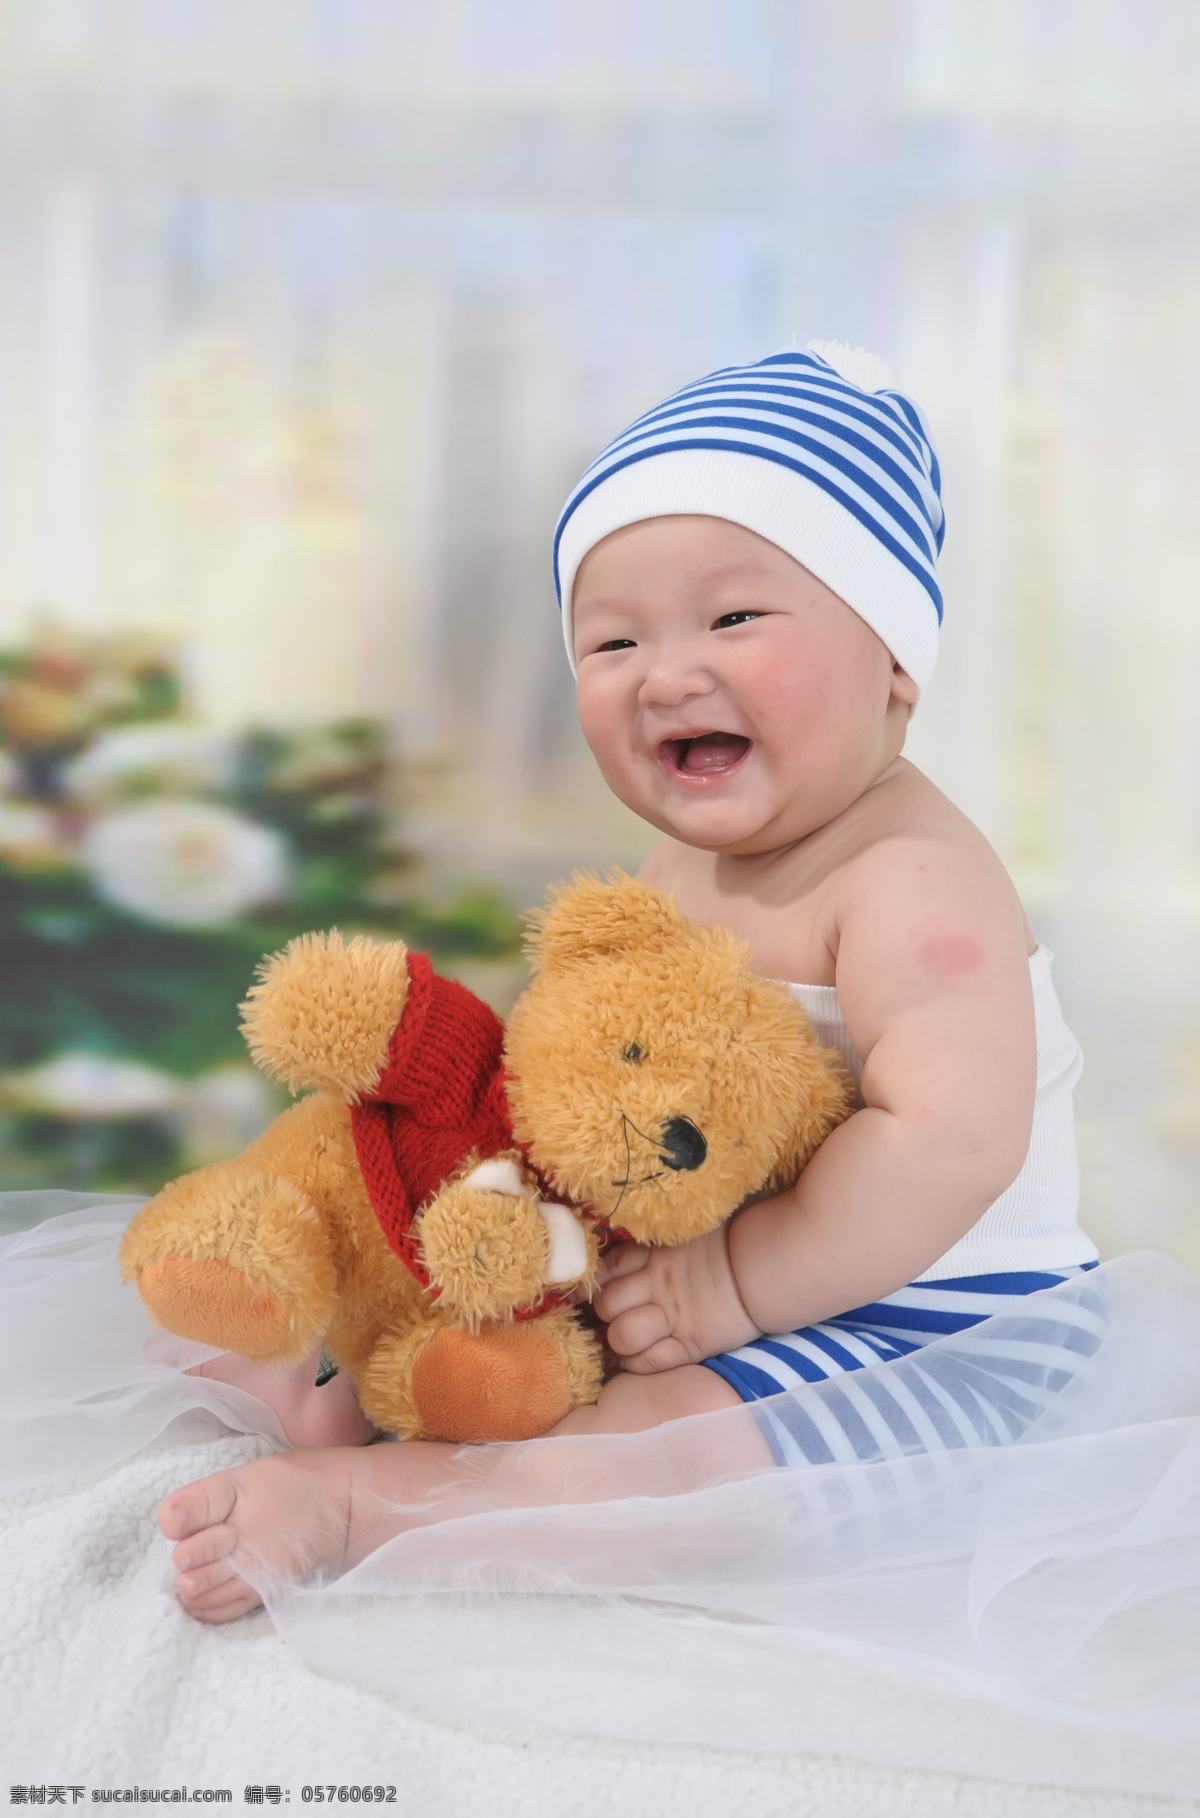 婴儿 儿童幼儿 帽子 男孩 人物图库 丝绸 玩具熊 大笑 坐着 psd源文件